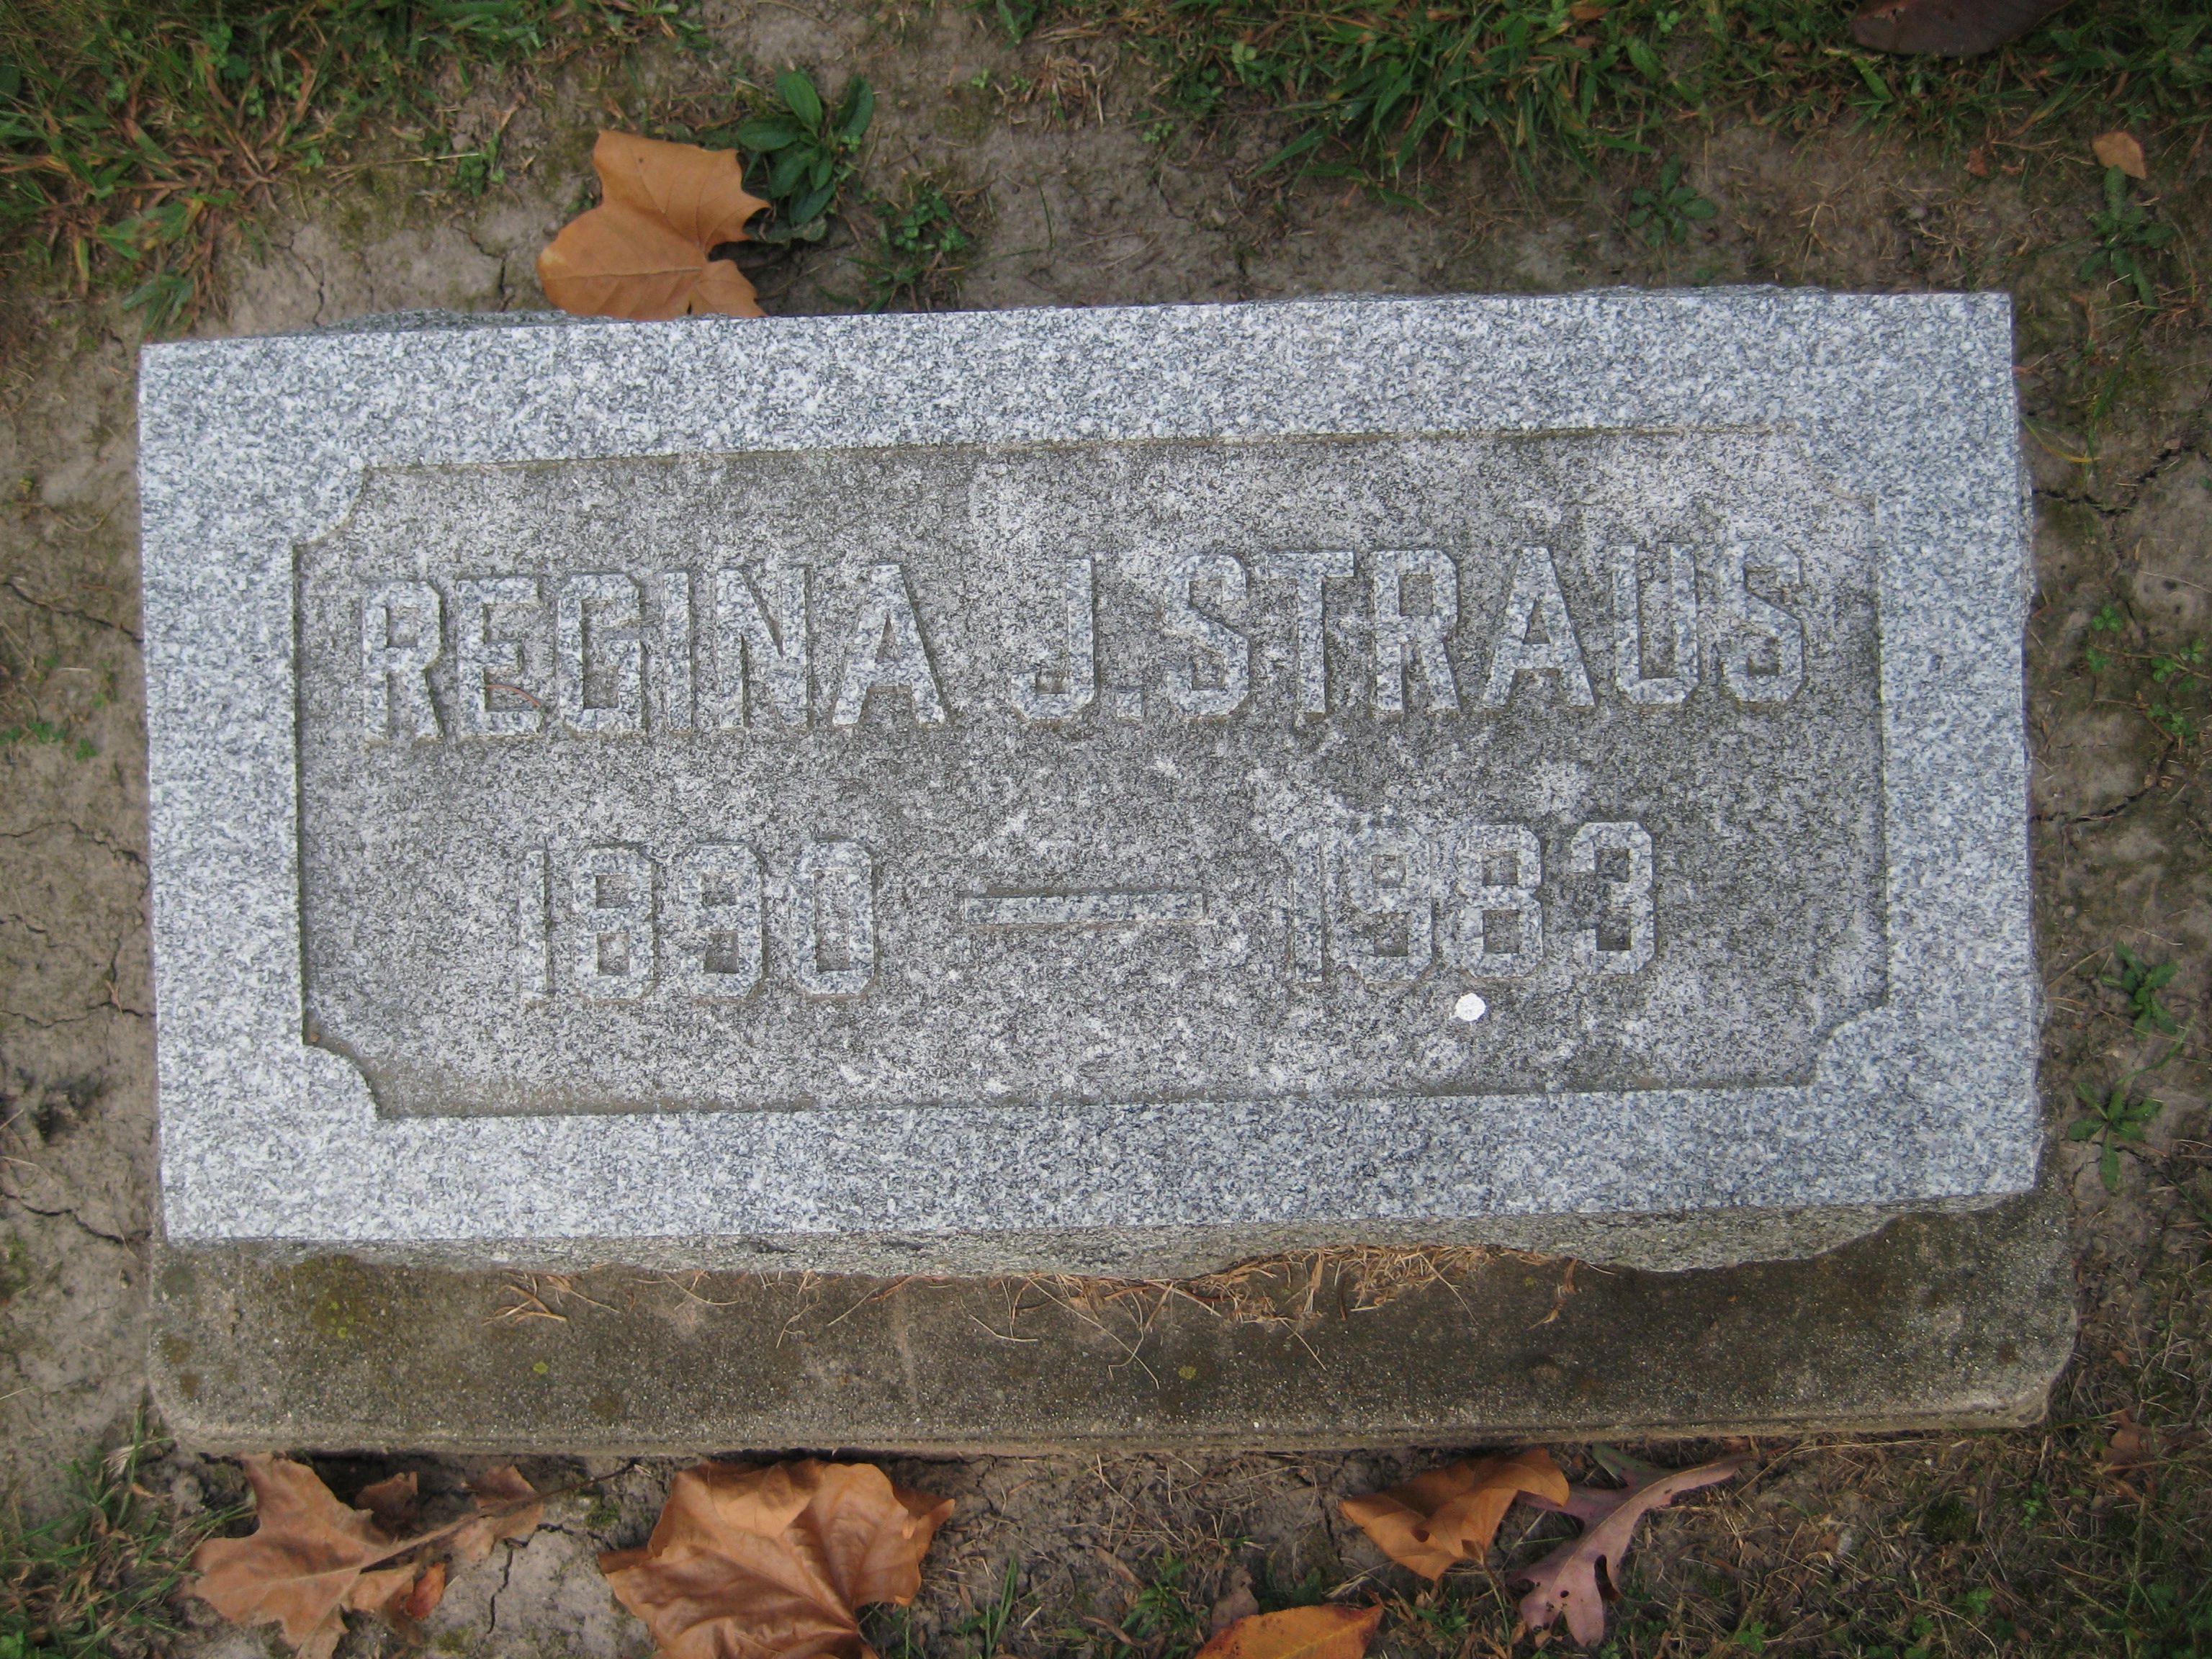 Straus, Regina